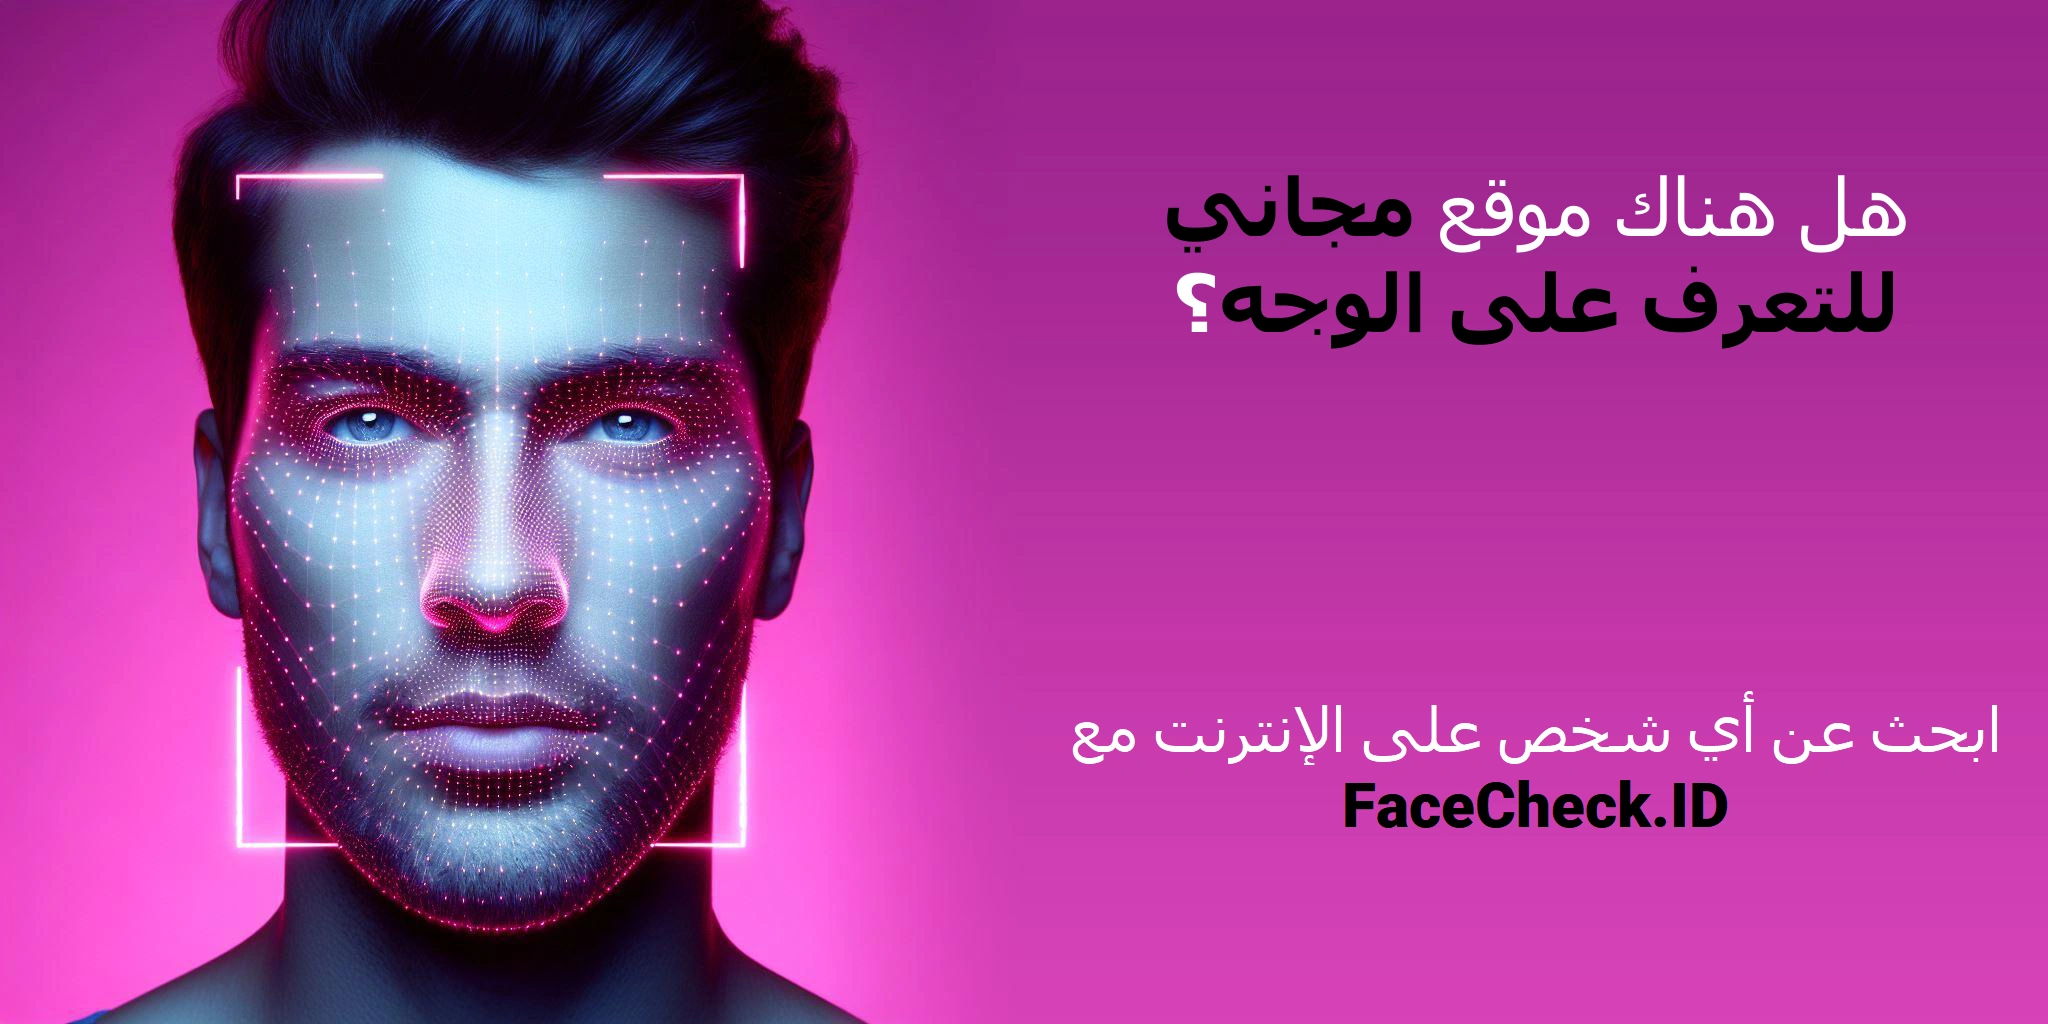 هل هناك موقع مجاني للتعرف على الوجه؟